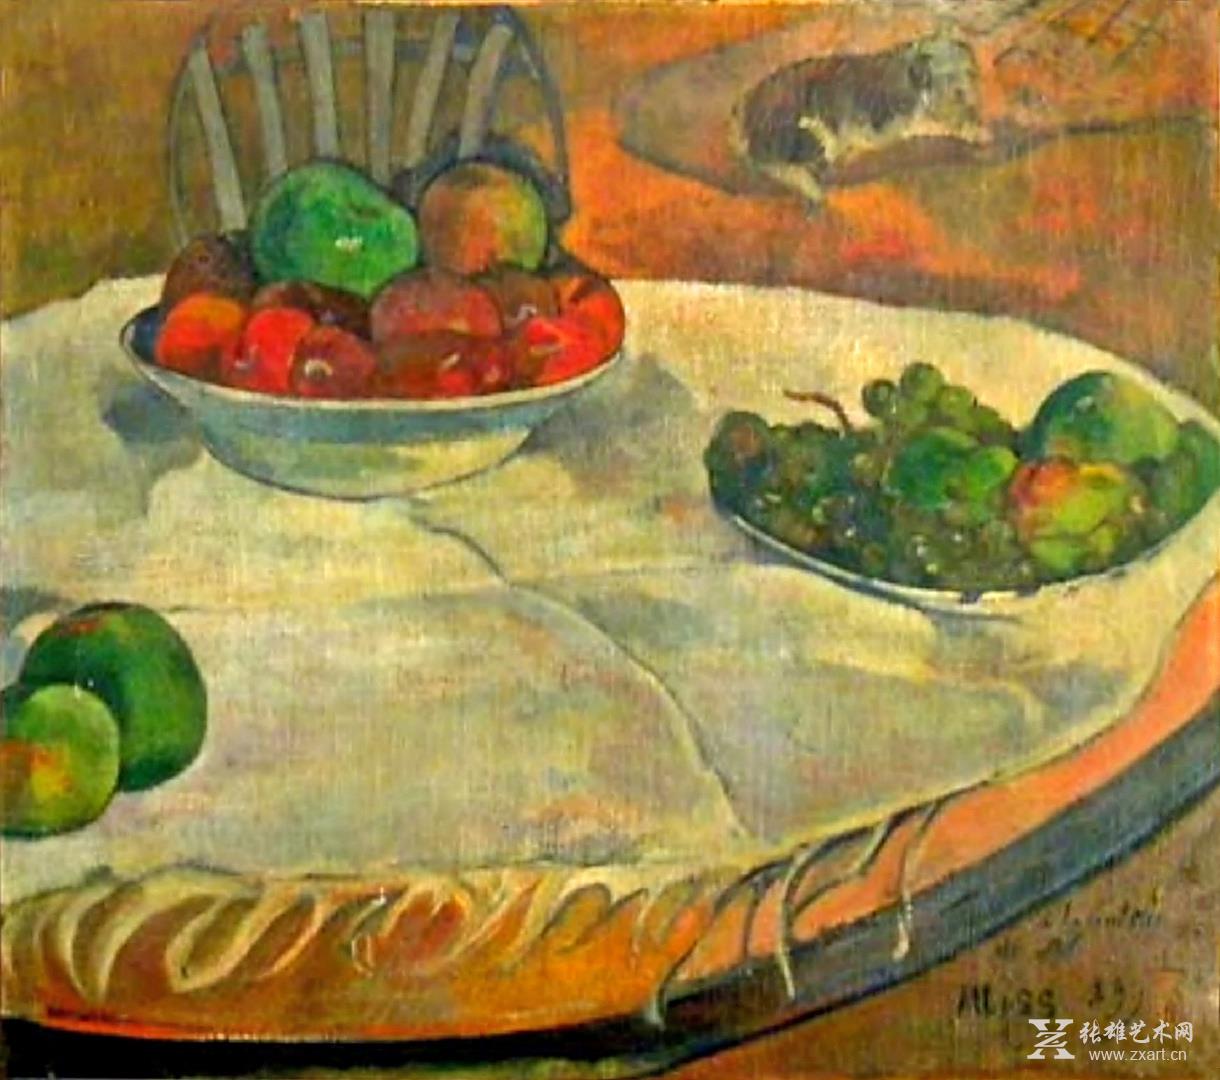 高更保罗(1848 - 1903)   标题:1899  桌上的水果和一只小狗/静物画